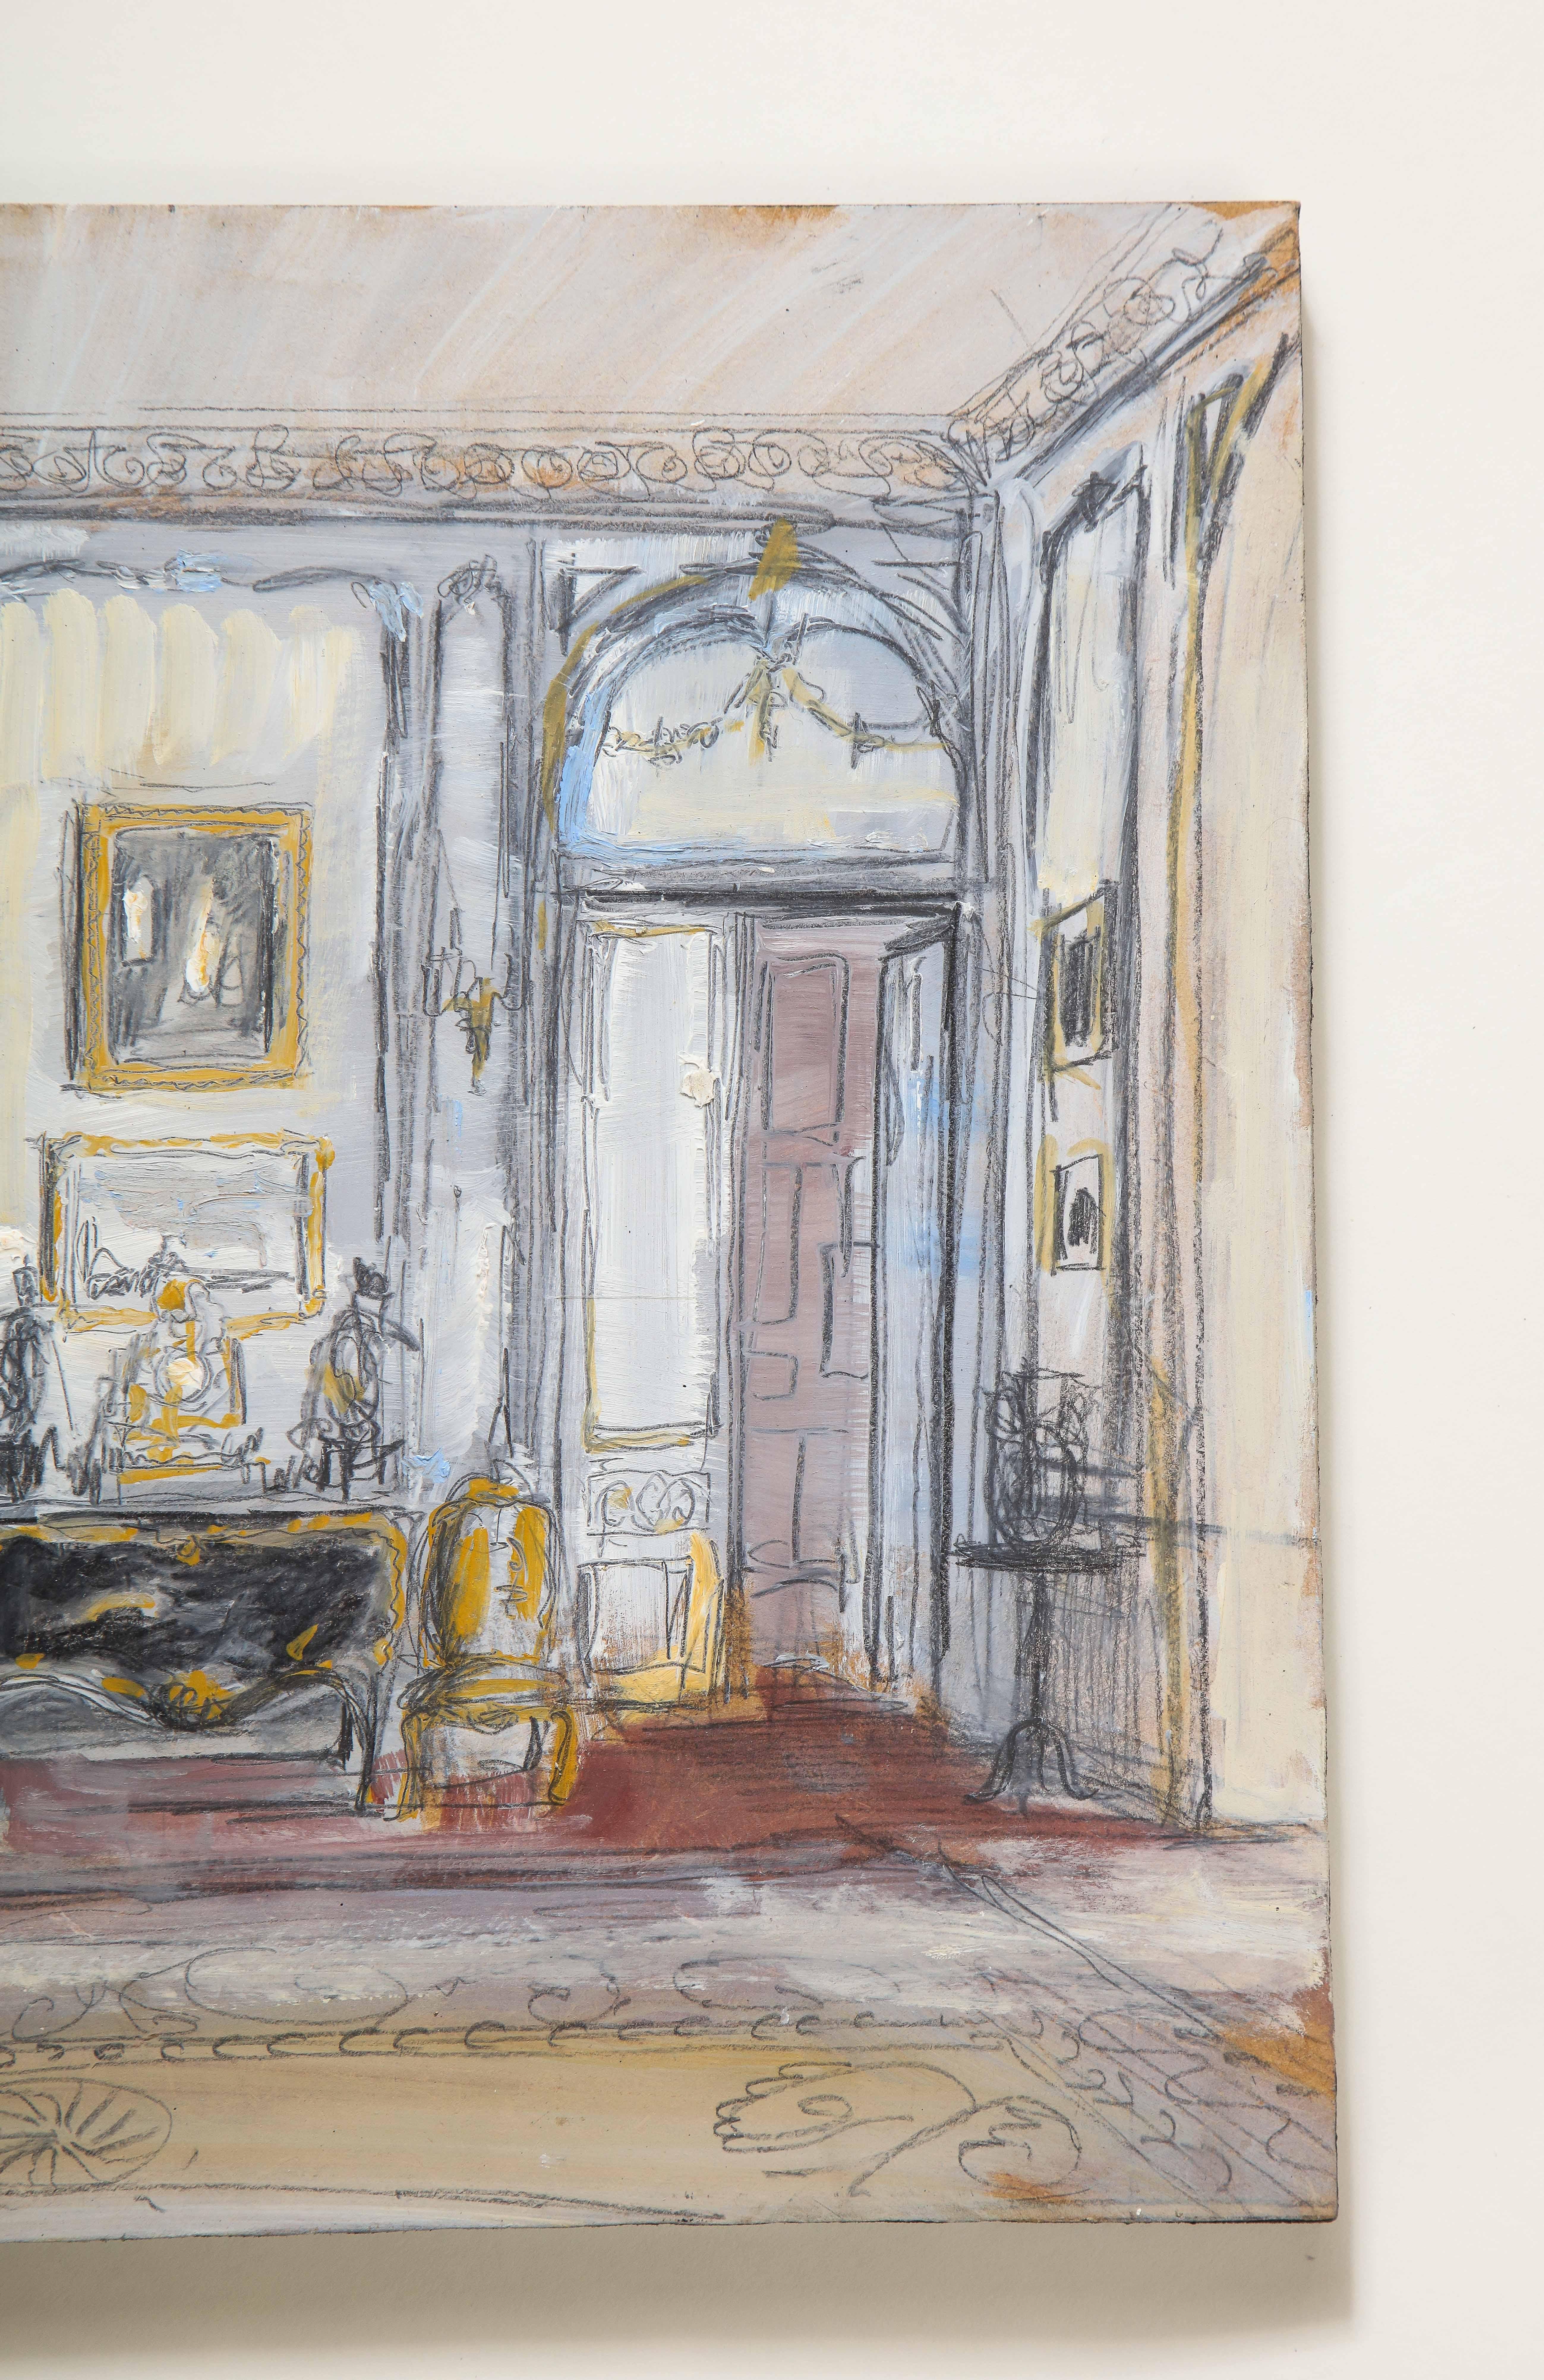 Drawing Room de Jayne Wrightsman, 820 Fifth Avenue, New York - Gris Interior Painting par Pierre Bergian